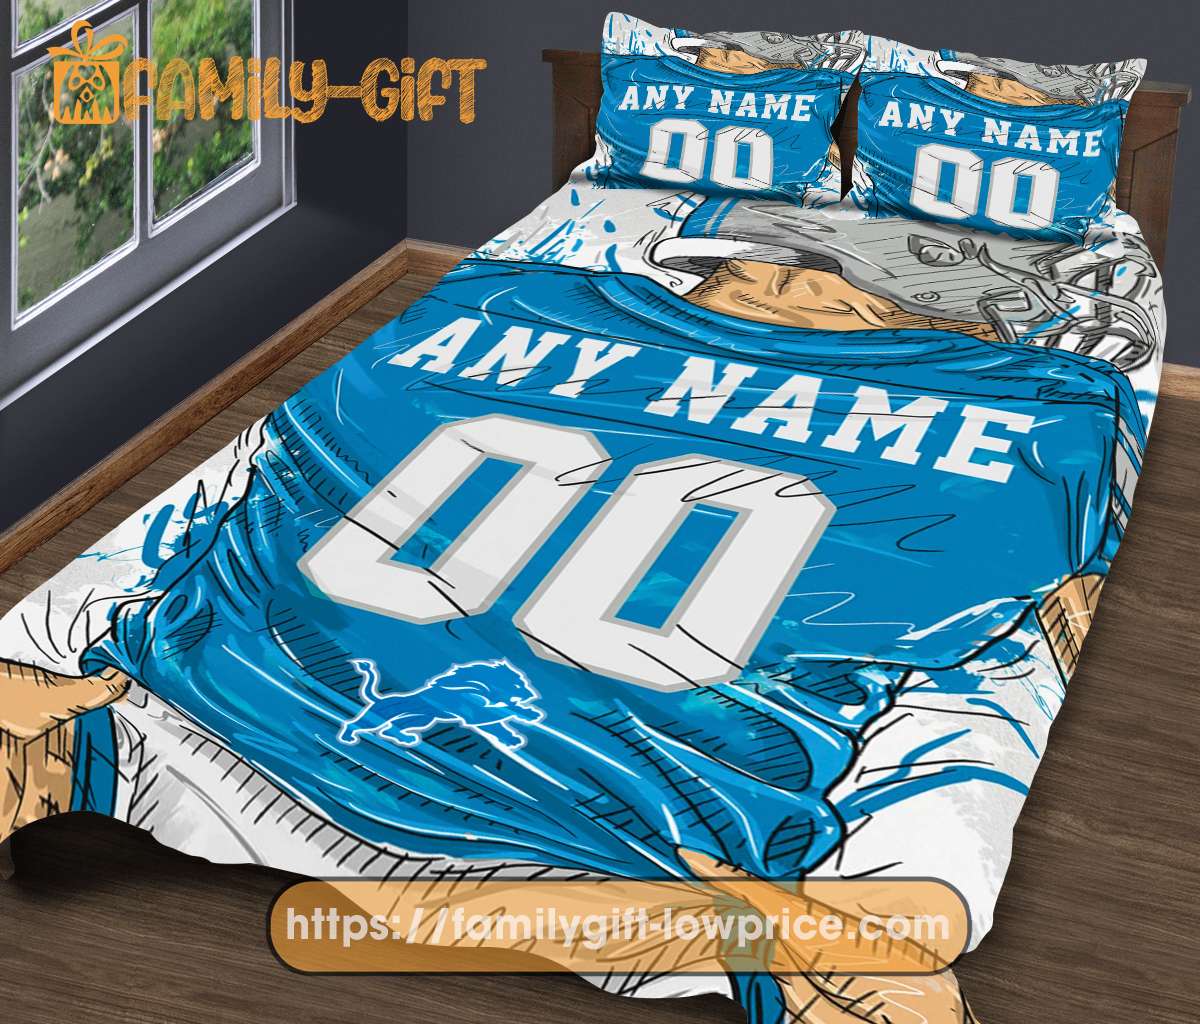 Detroit Lion Jersey NFL Bedding Sets, Detroit Lions Gifts, Cute Bed Sets Custom Name Number